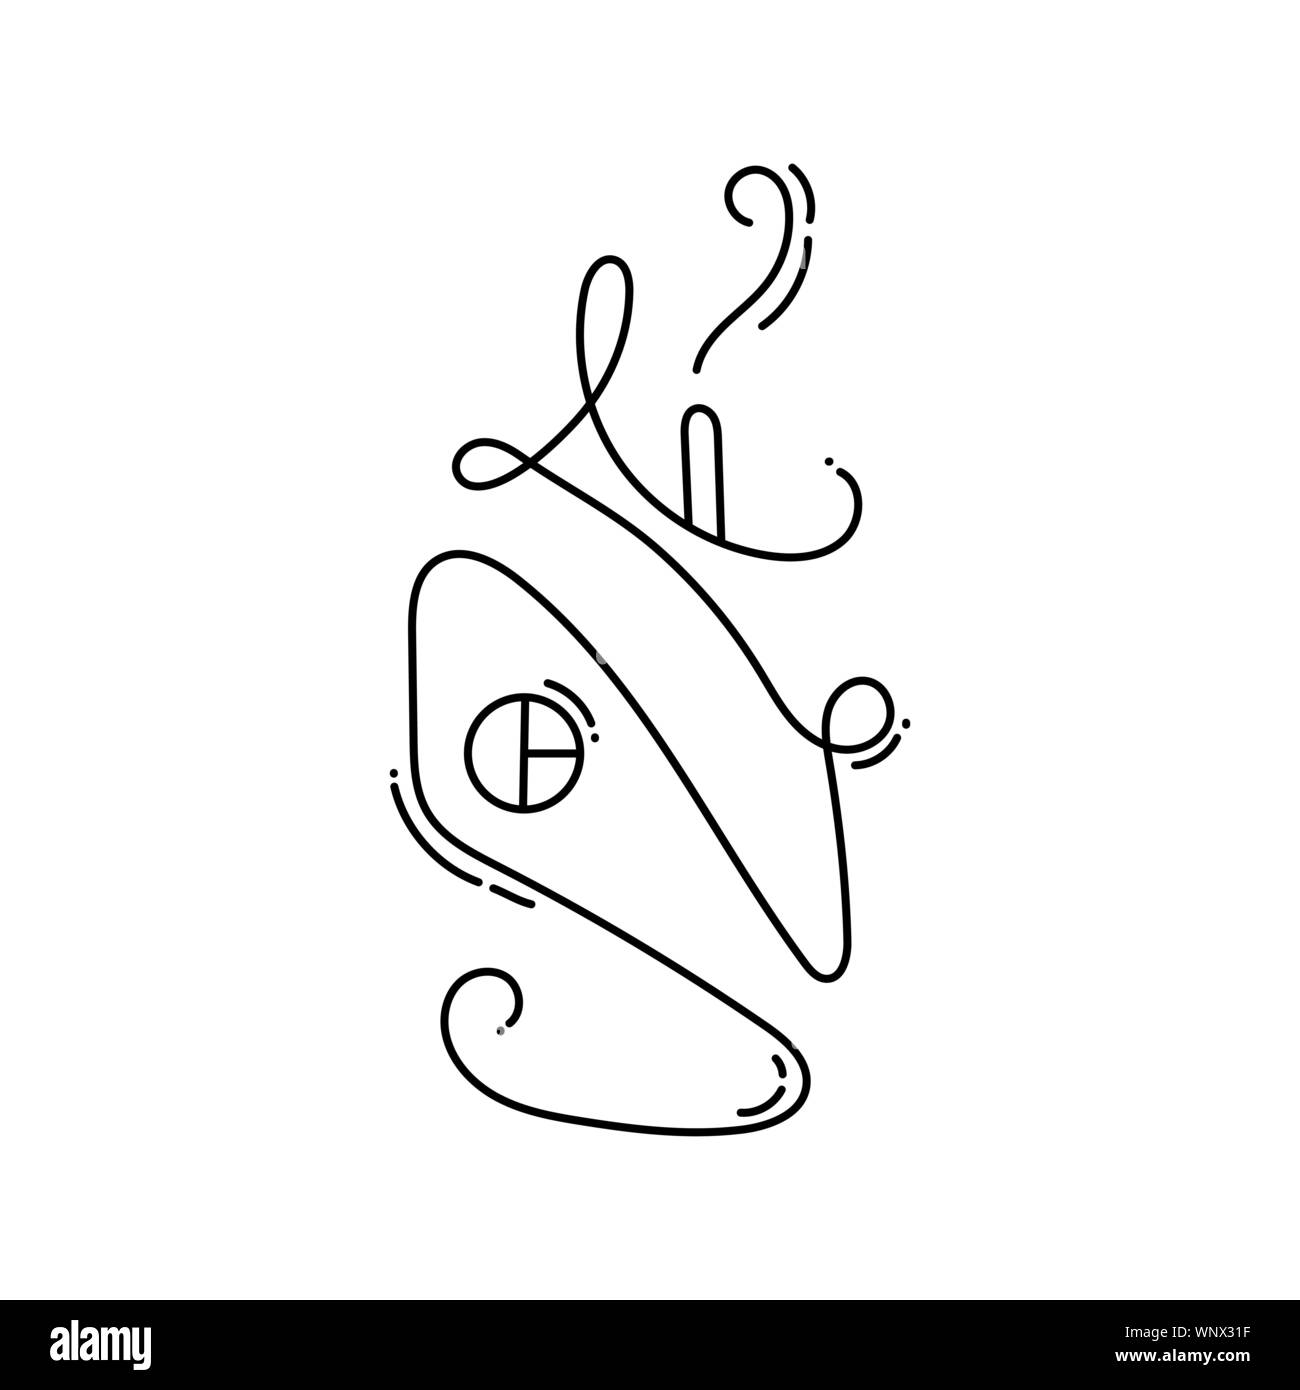 Vektor Haus Symbol und Logo Vorlage in schwarzer Farbe auf weißem Hintergrund. Doodle Stil. Design Print, Plakat, Symbol Einrichtung Stock Vektor